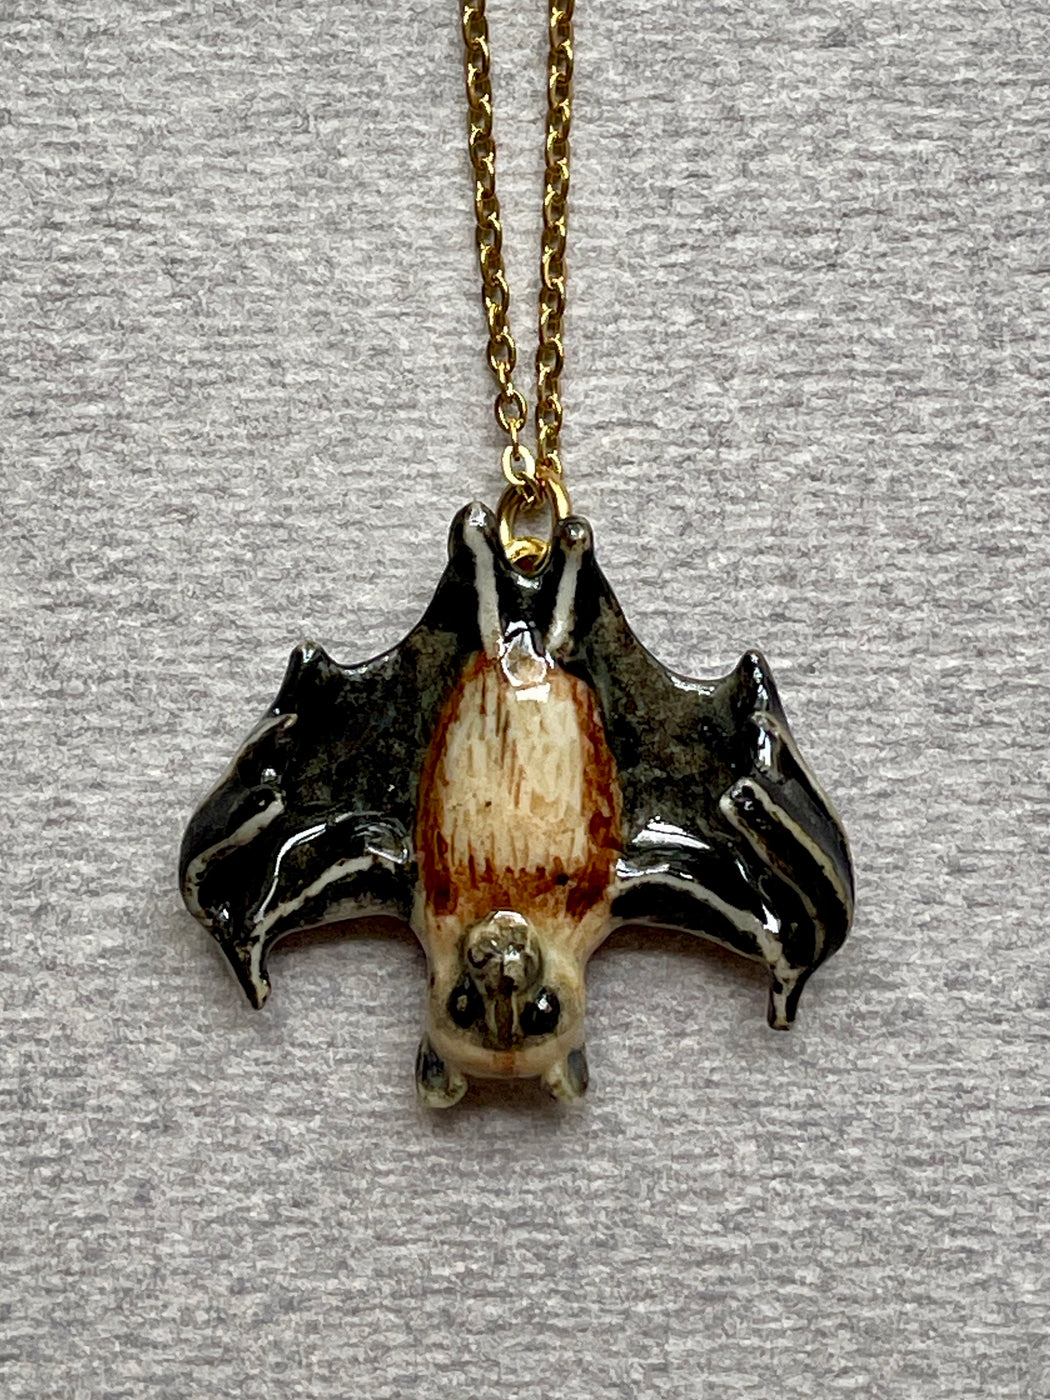 Porcelain "Fruit Bat" Pendant by Camp Hollow